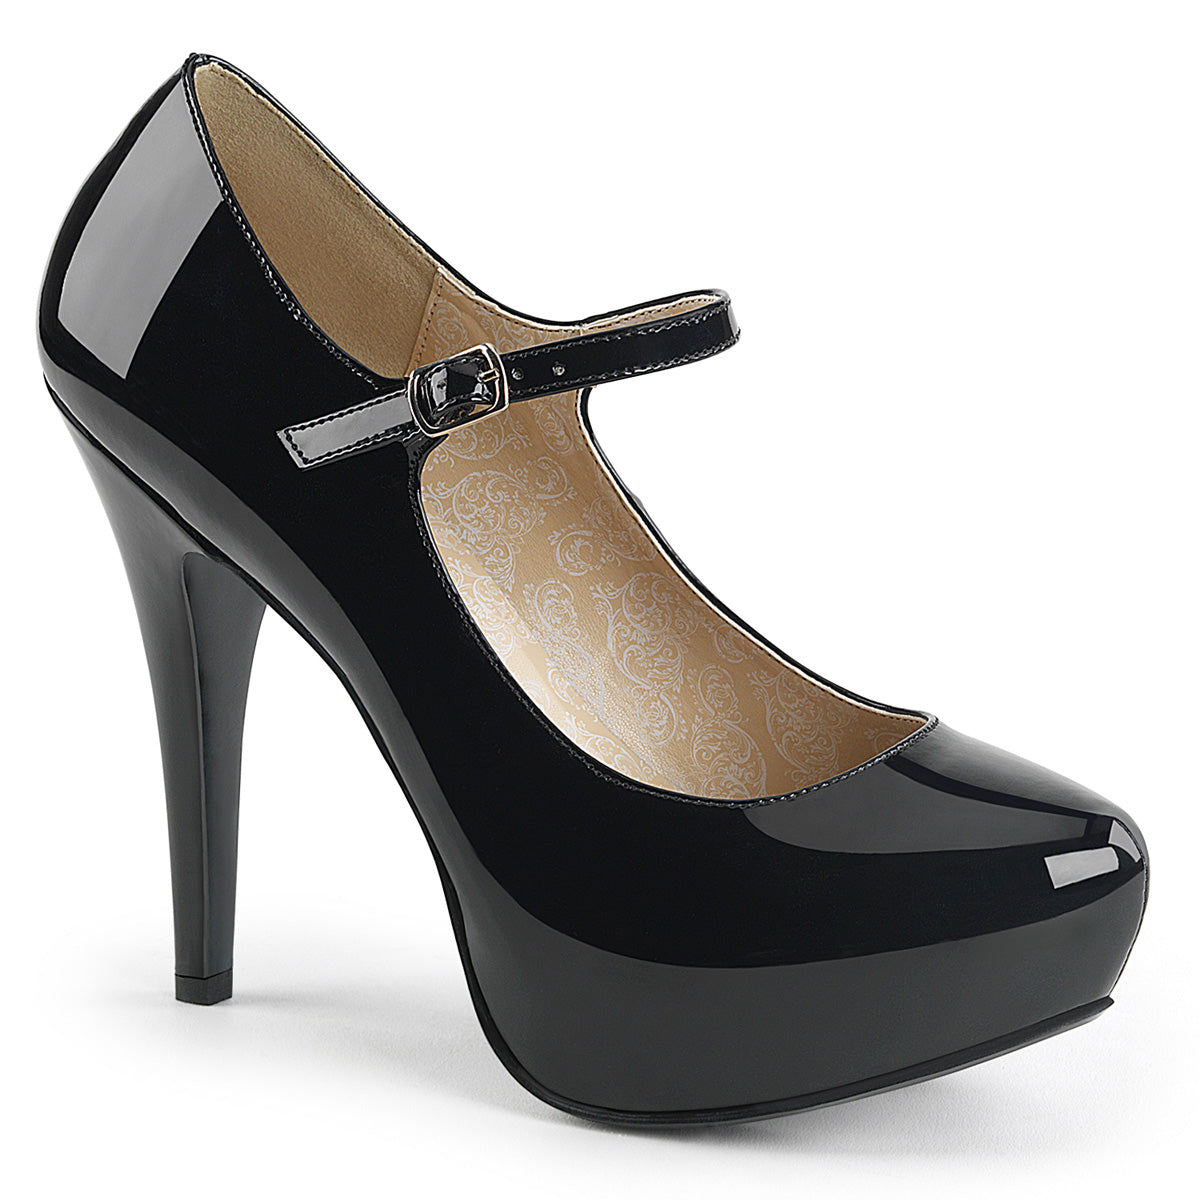 CHLOE-02 Large Size Ladies Shoes 5" Heel Black Patent Platform Shoes